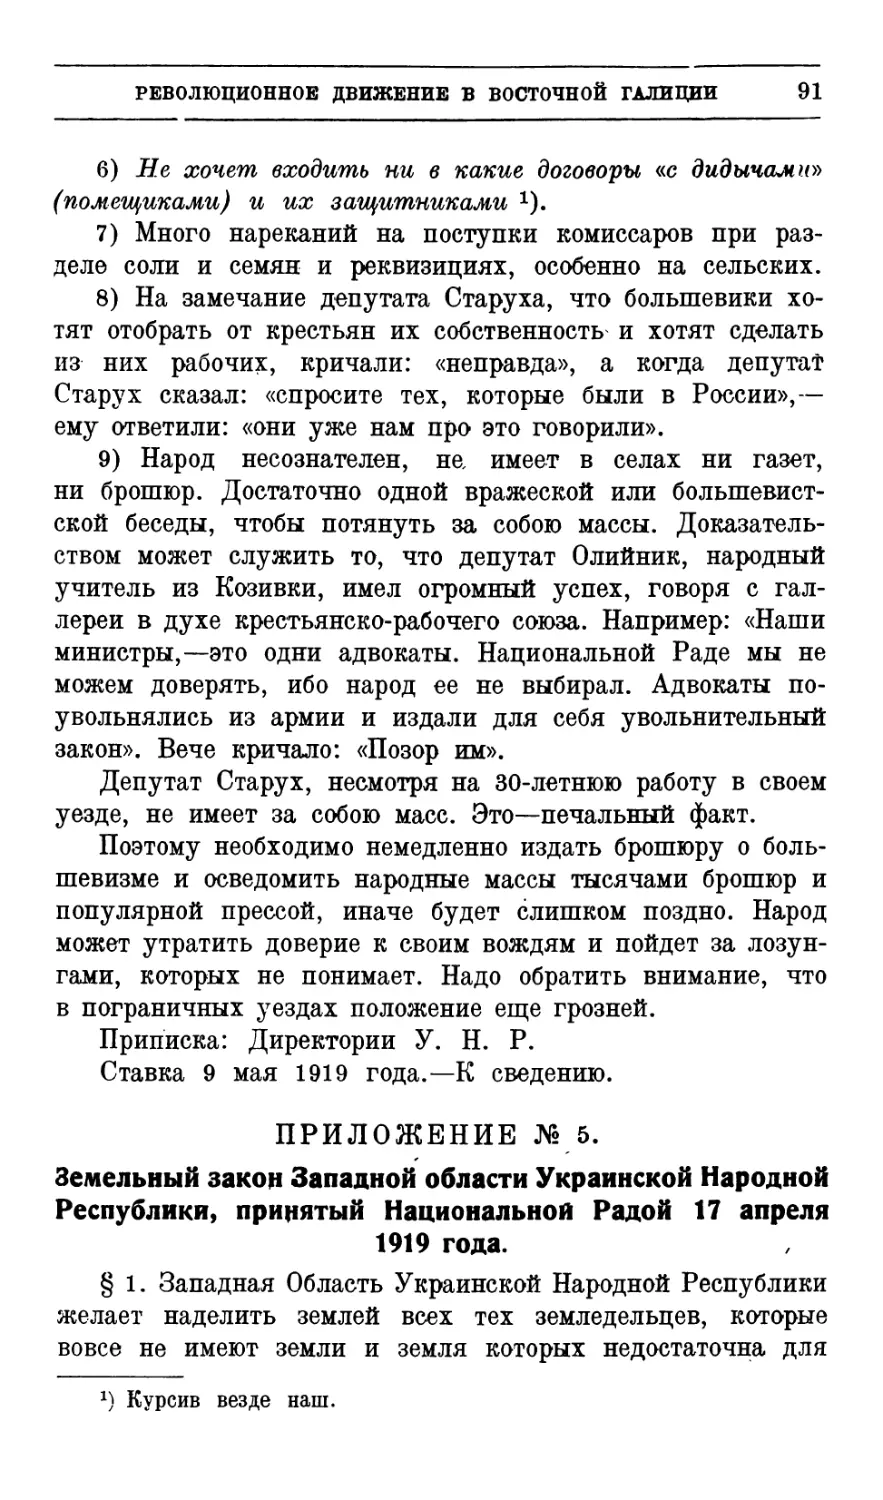 № 5.  Земельный  закон  Западной  области  Украинской Народной  Республики,  принятый  Национальной Радой  17  апреля  1919  г